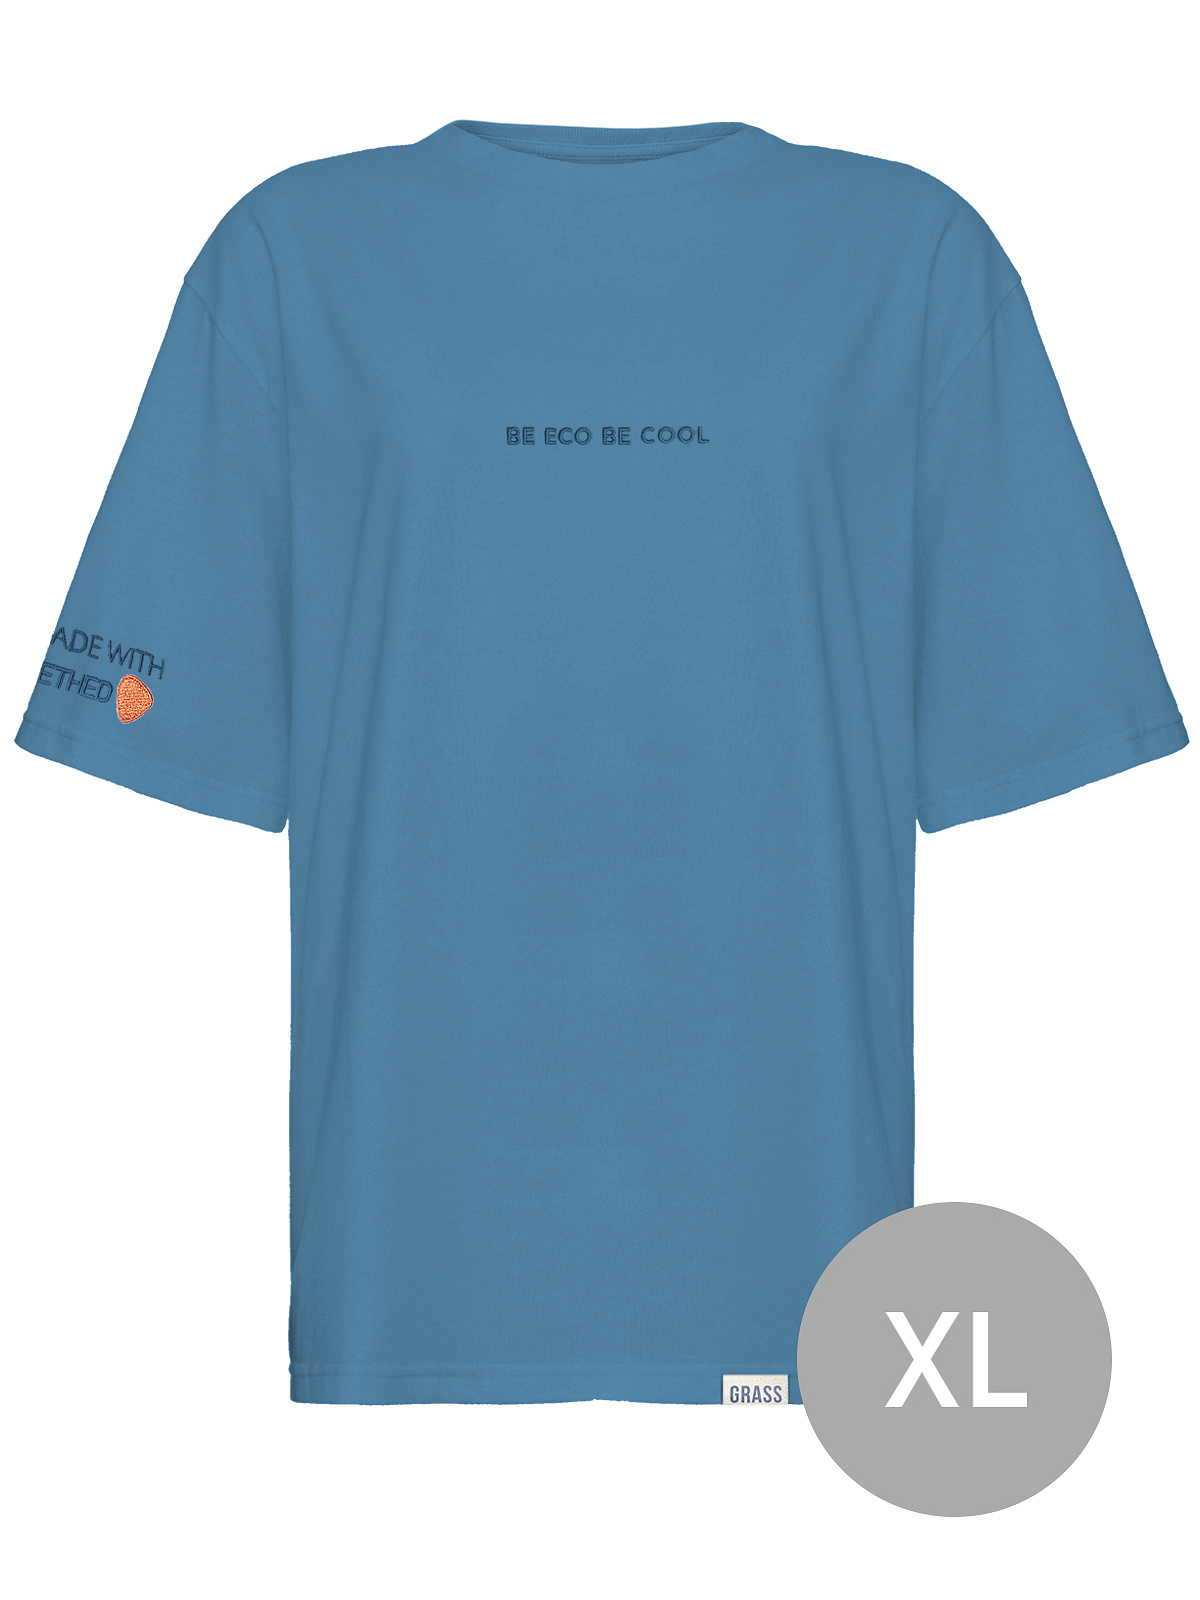 Футболка синяя вышивка "Be Eco, Be cool" размер XL